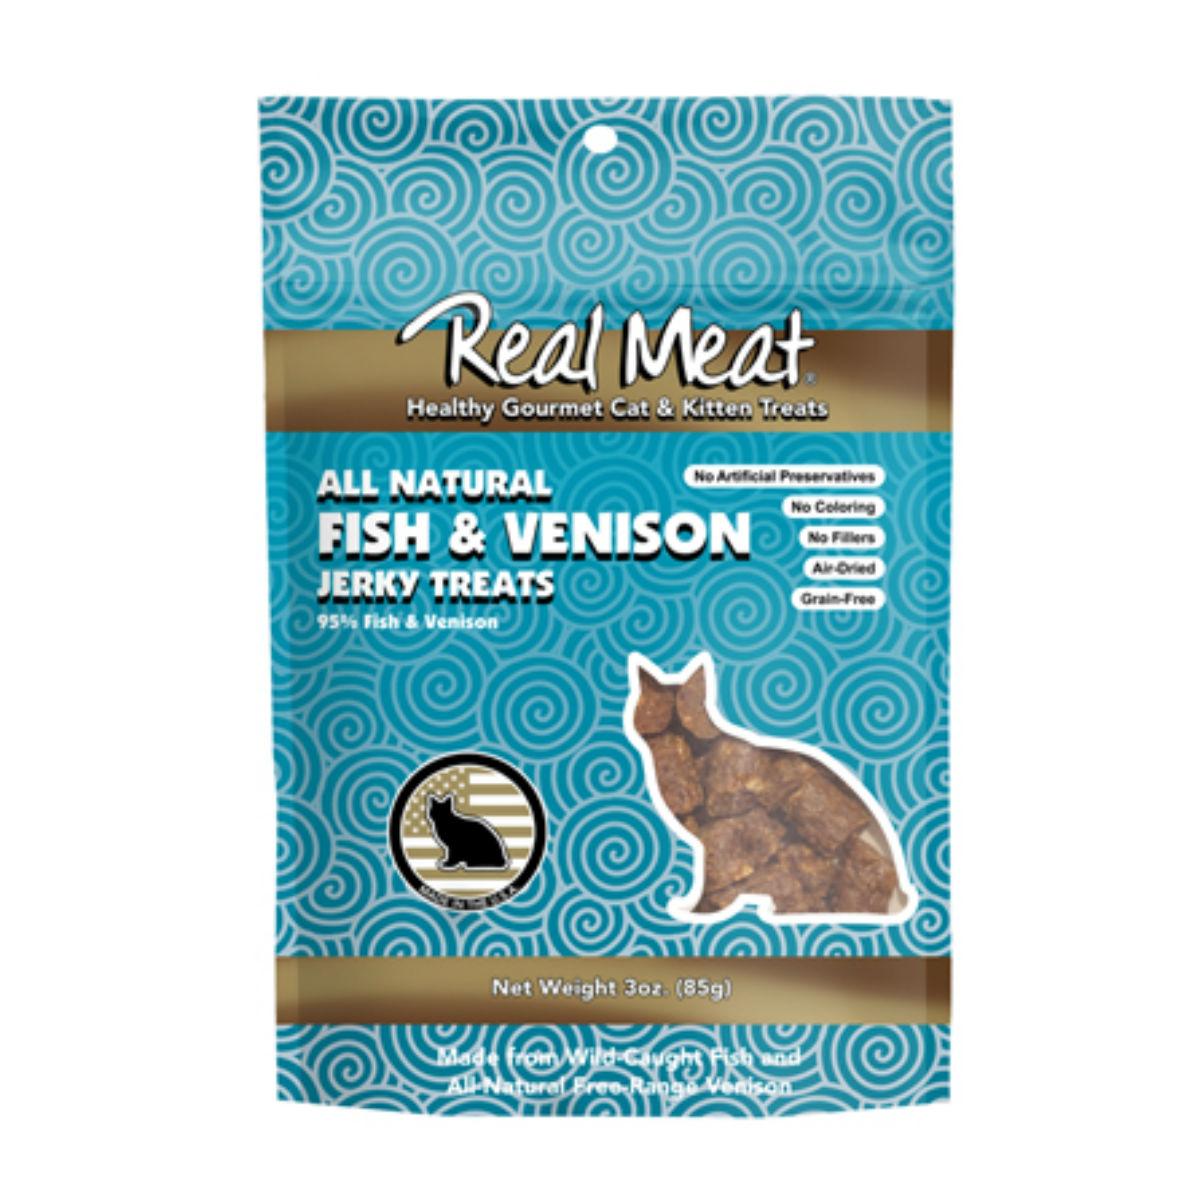 Real Meat Jerky Cat Treats - Fish & Venison